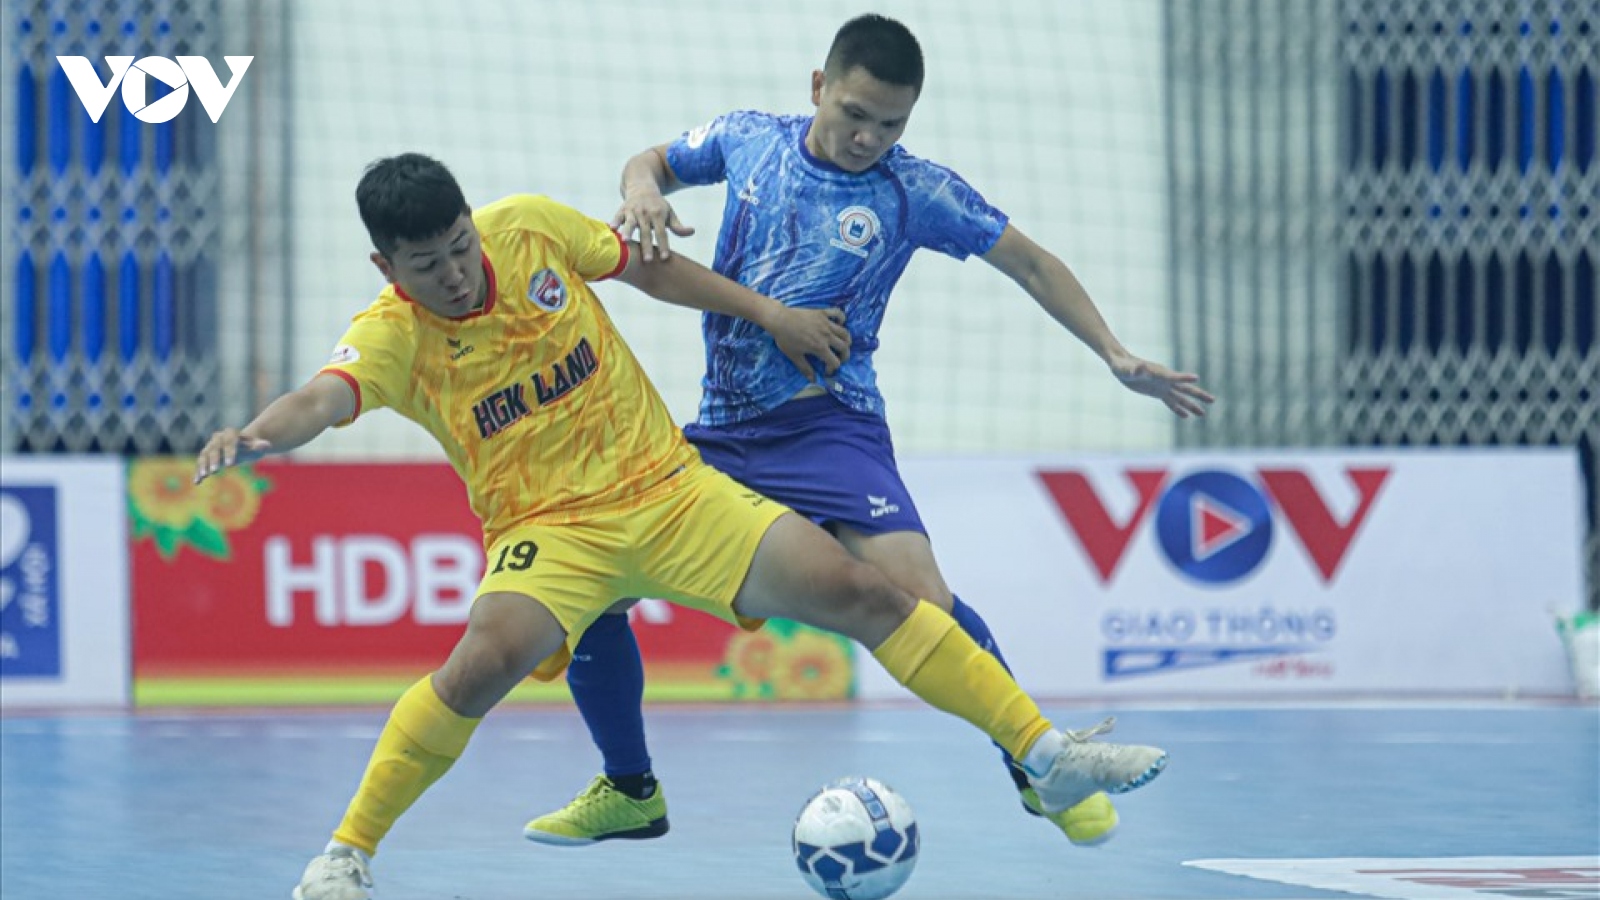 Xem trực tiếp Tân Hiệp Hưng vs HGK Đắk Lắk giải Futsal HDBank VĐQG 2022